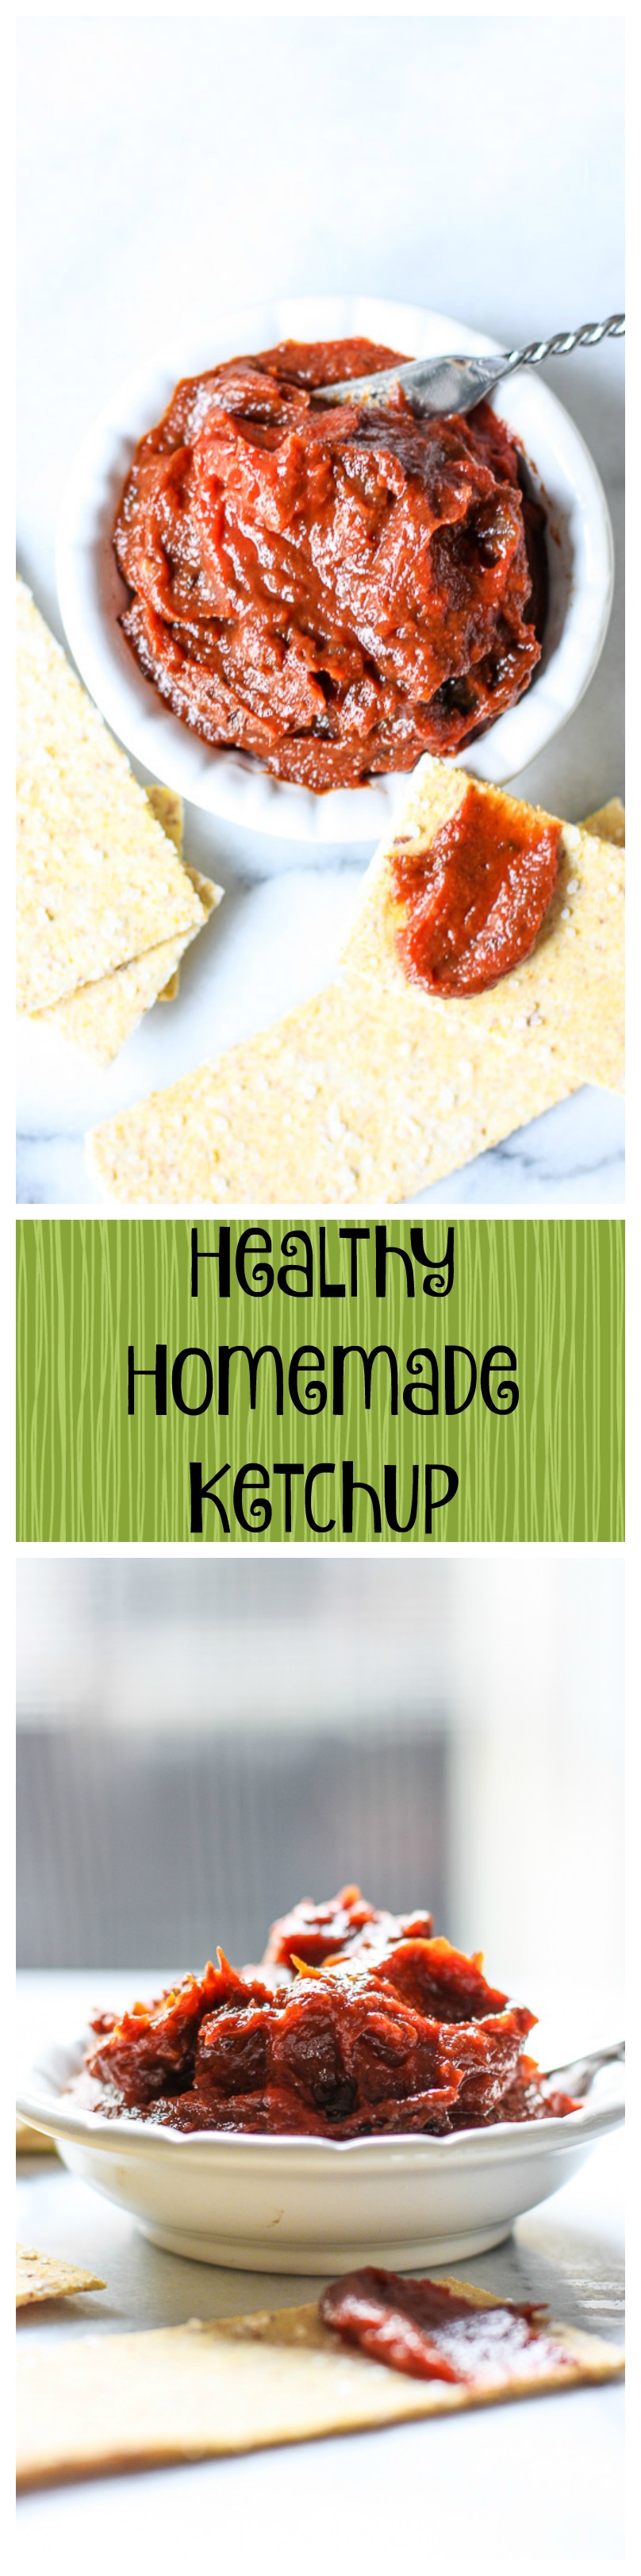 healthy homemade ketchup